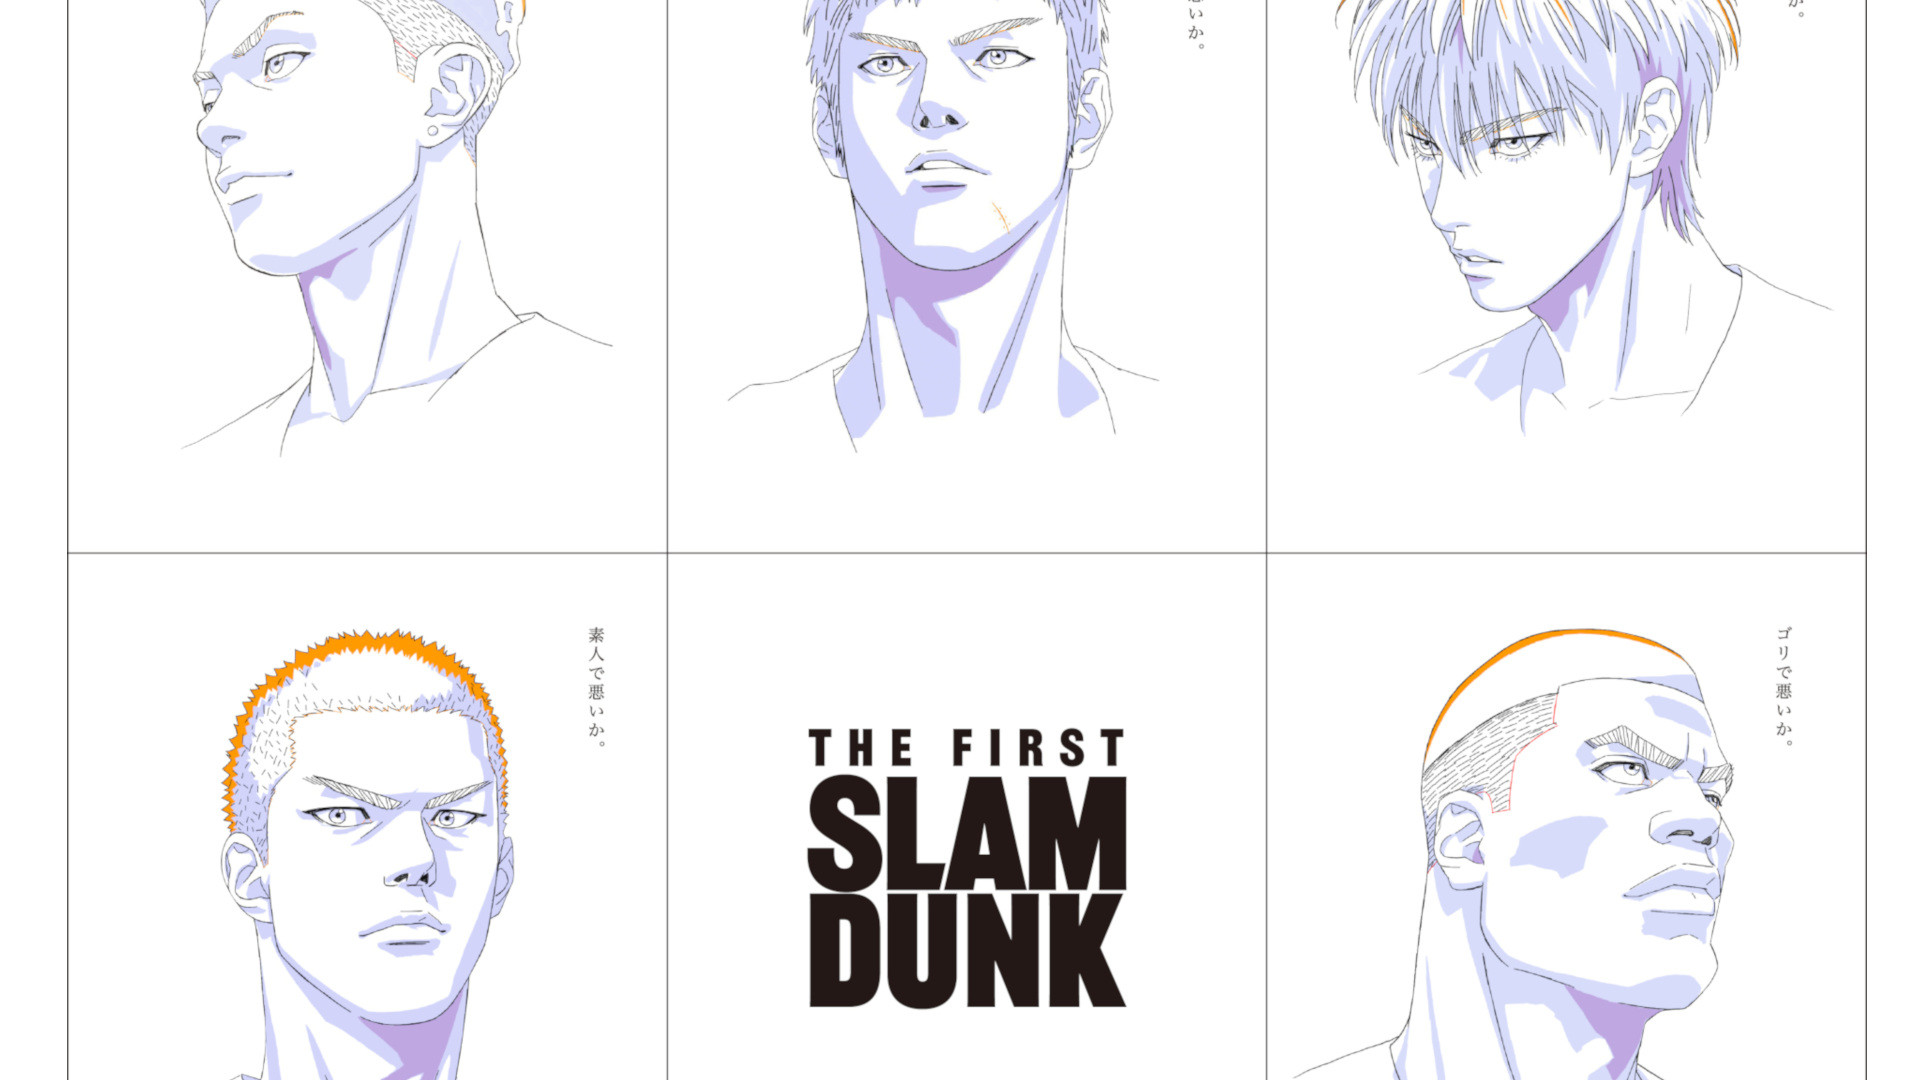 映画 スラムダンク The First Slam Dunk 本編の一部を視聴できる映像が解禁 映画館にて湘北メンバーたちが描かれたポスターも掲載中 ゲーム エンタメ最新情報のファミ通 Com